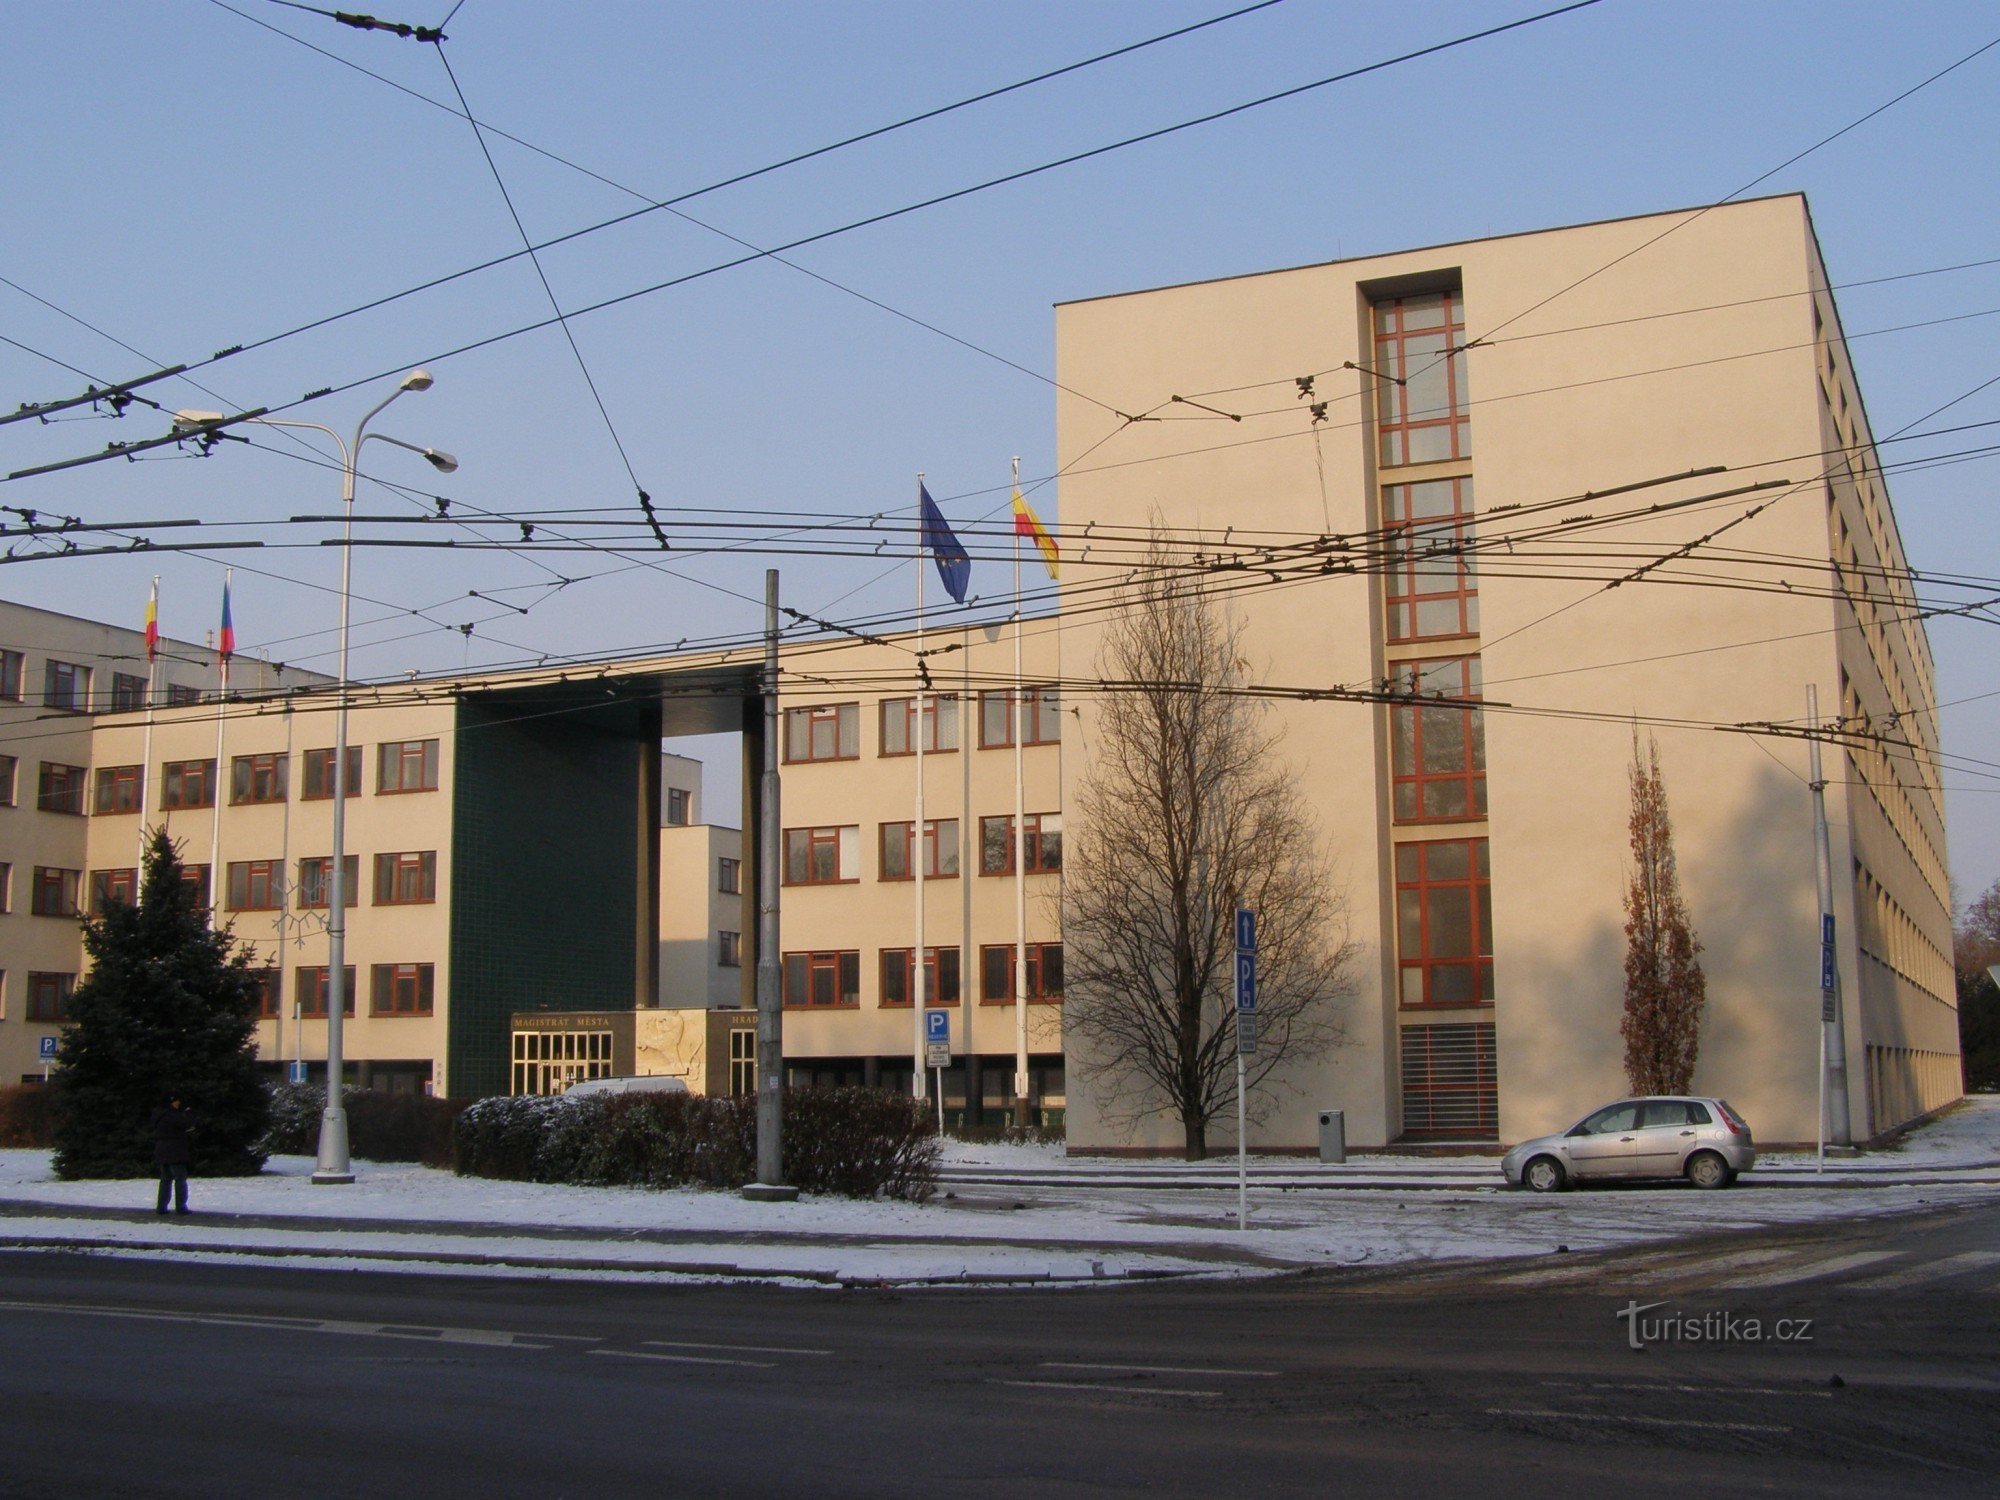 Hradec Králové - Văn phòng Tài chính và Quận Gočárův